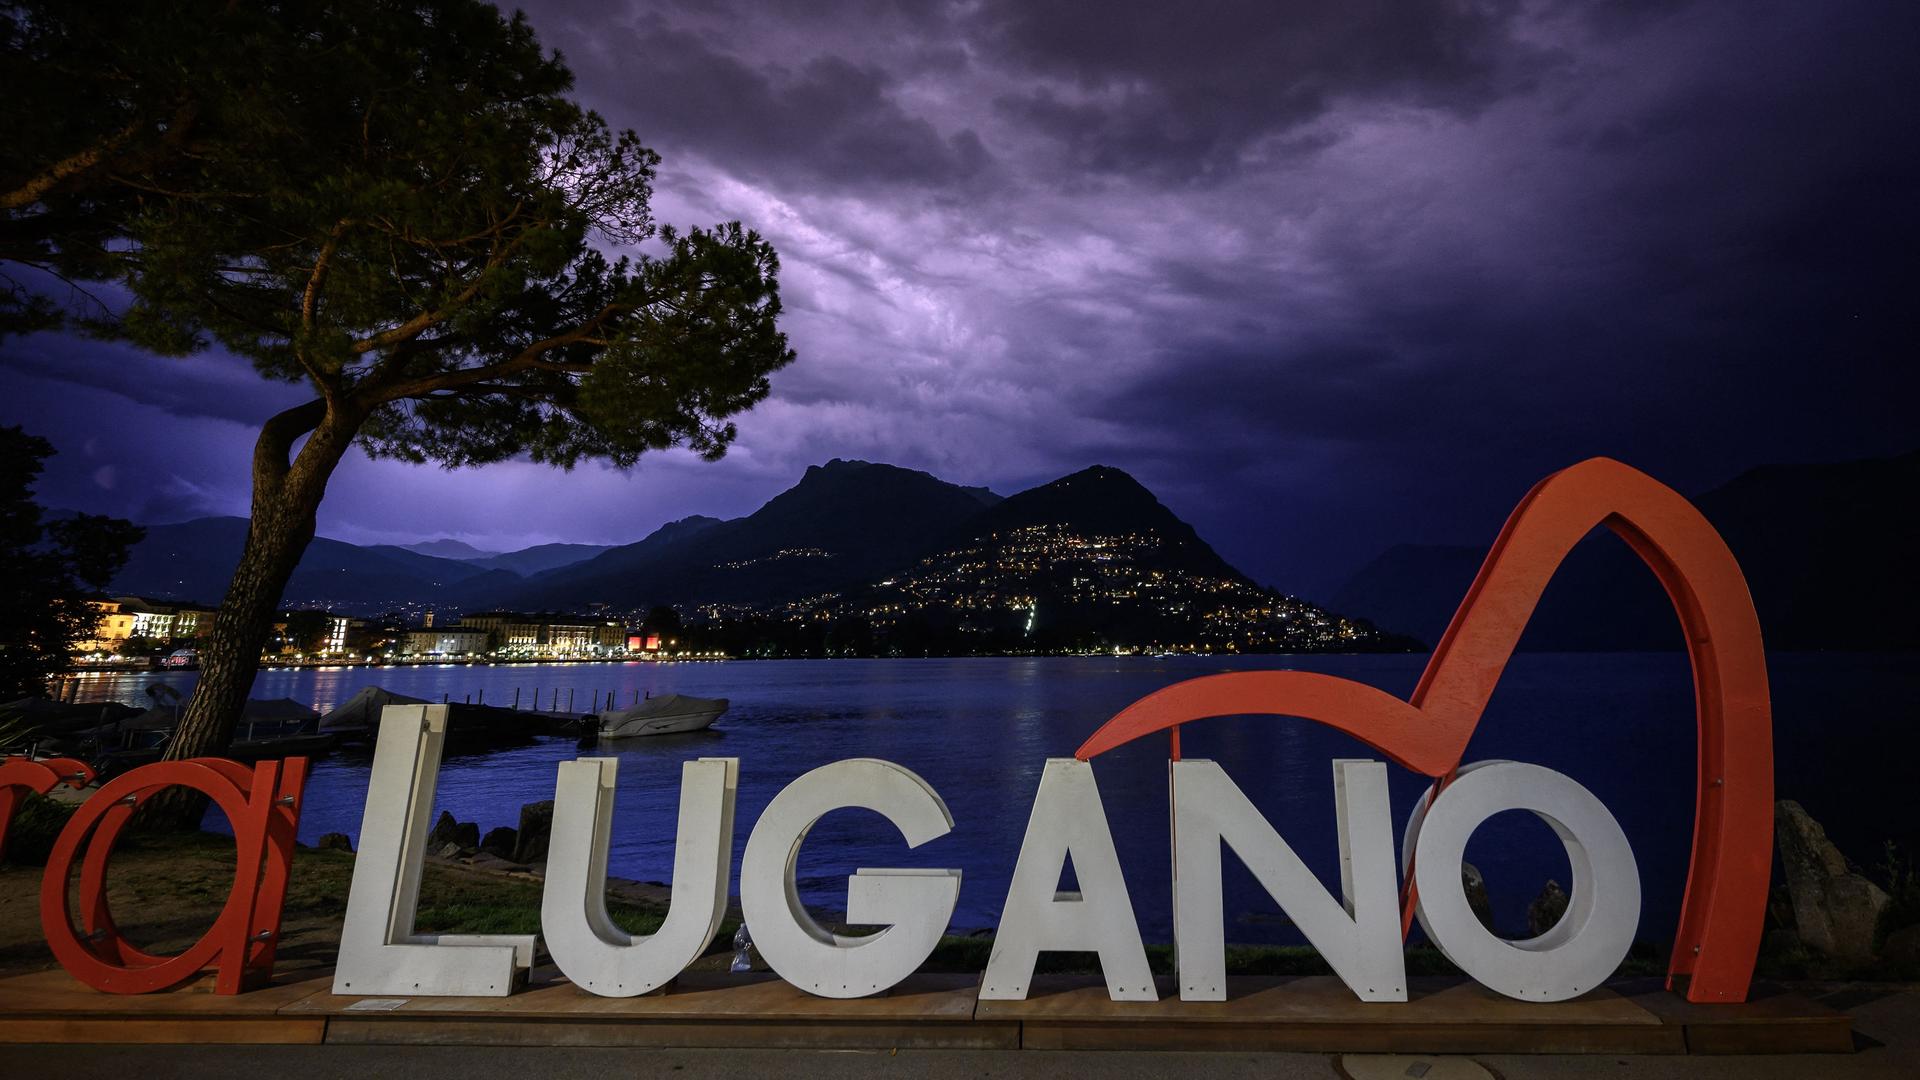 Das Logo der Konferenz in Lugano zum Wiederaufbau der kriegszerstörten Gebiete in der Ukraine vor dunklem Himmel und einem See.